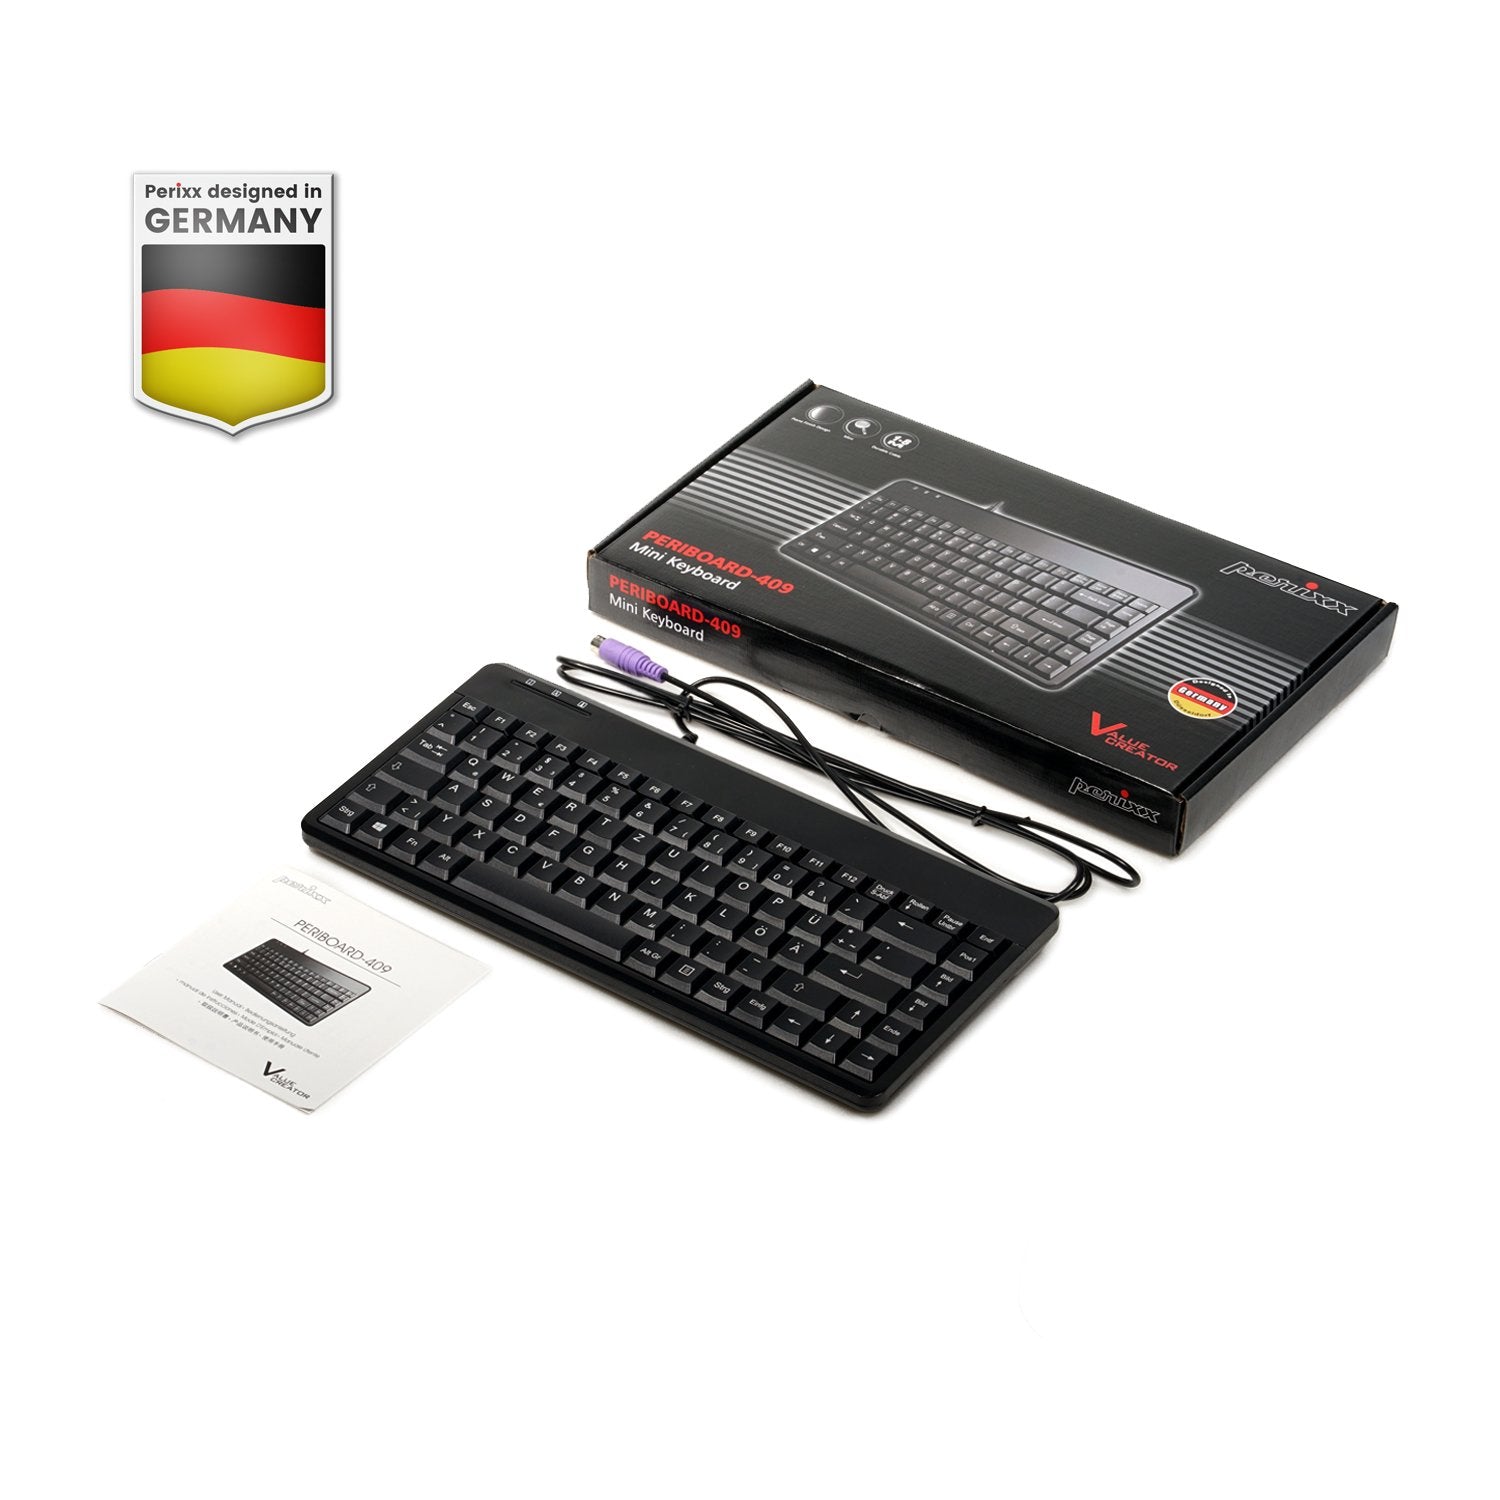 PERIBOARD-409 P - Mini PS/2 Keyboard – Perixx USA